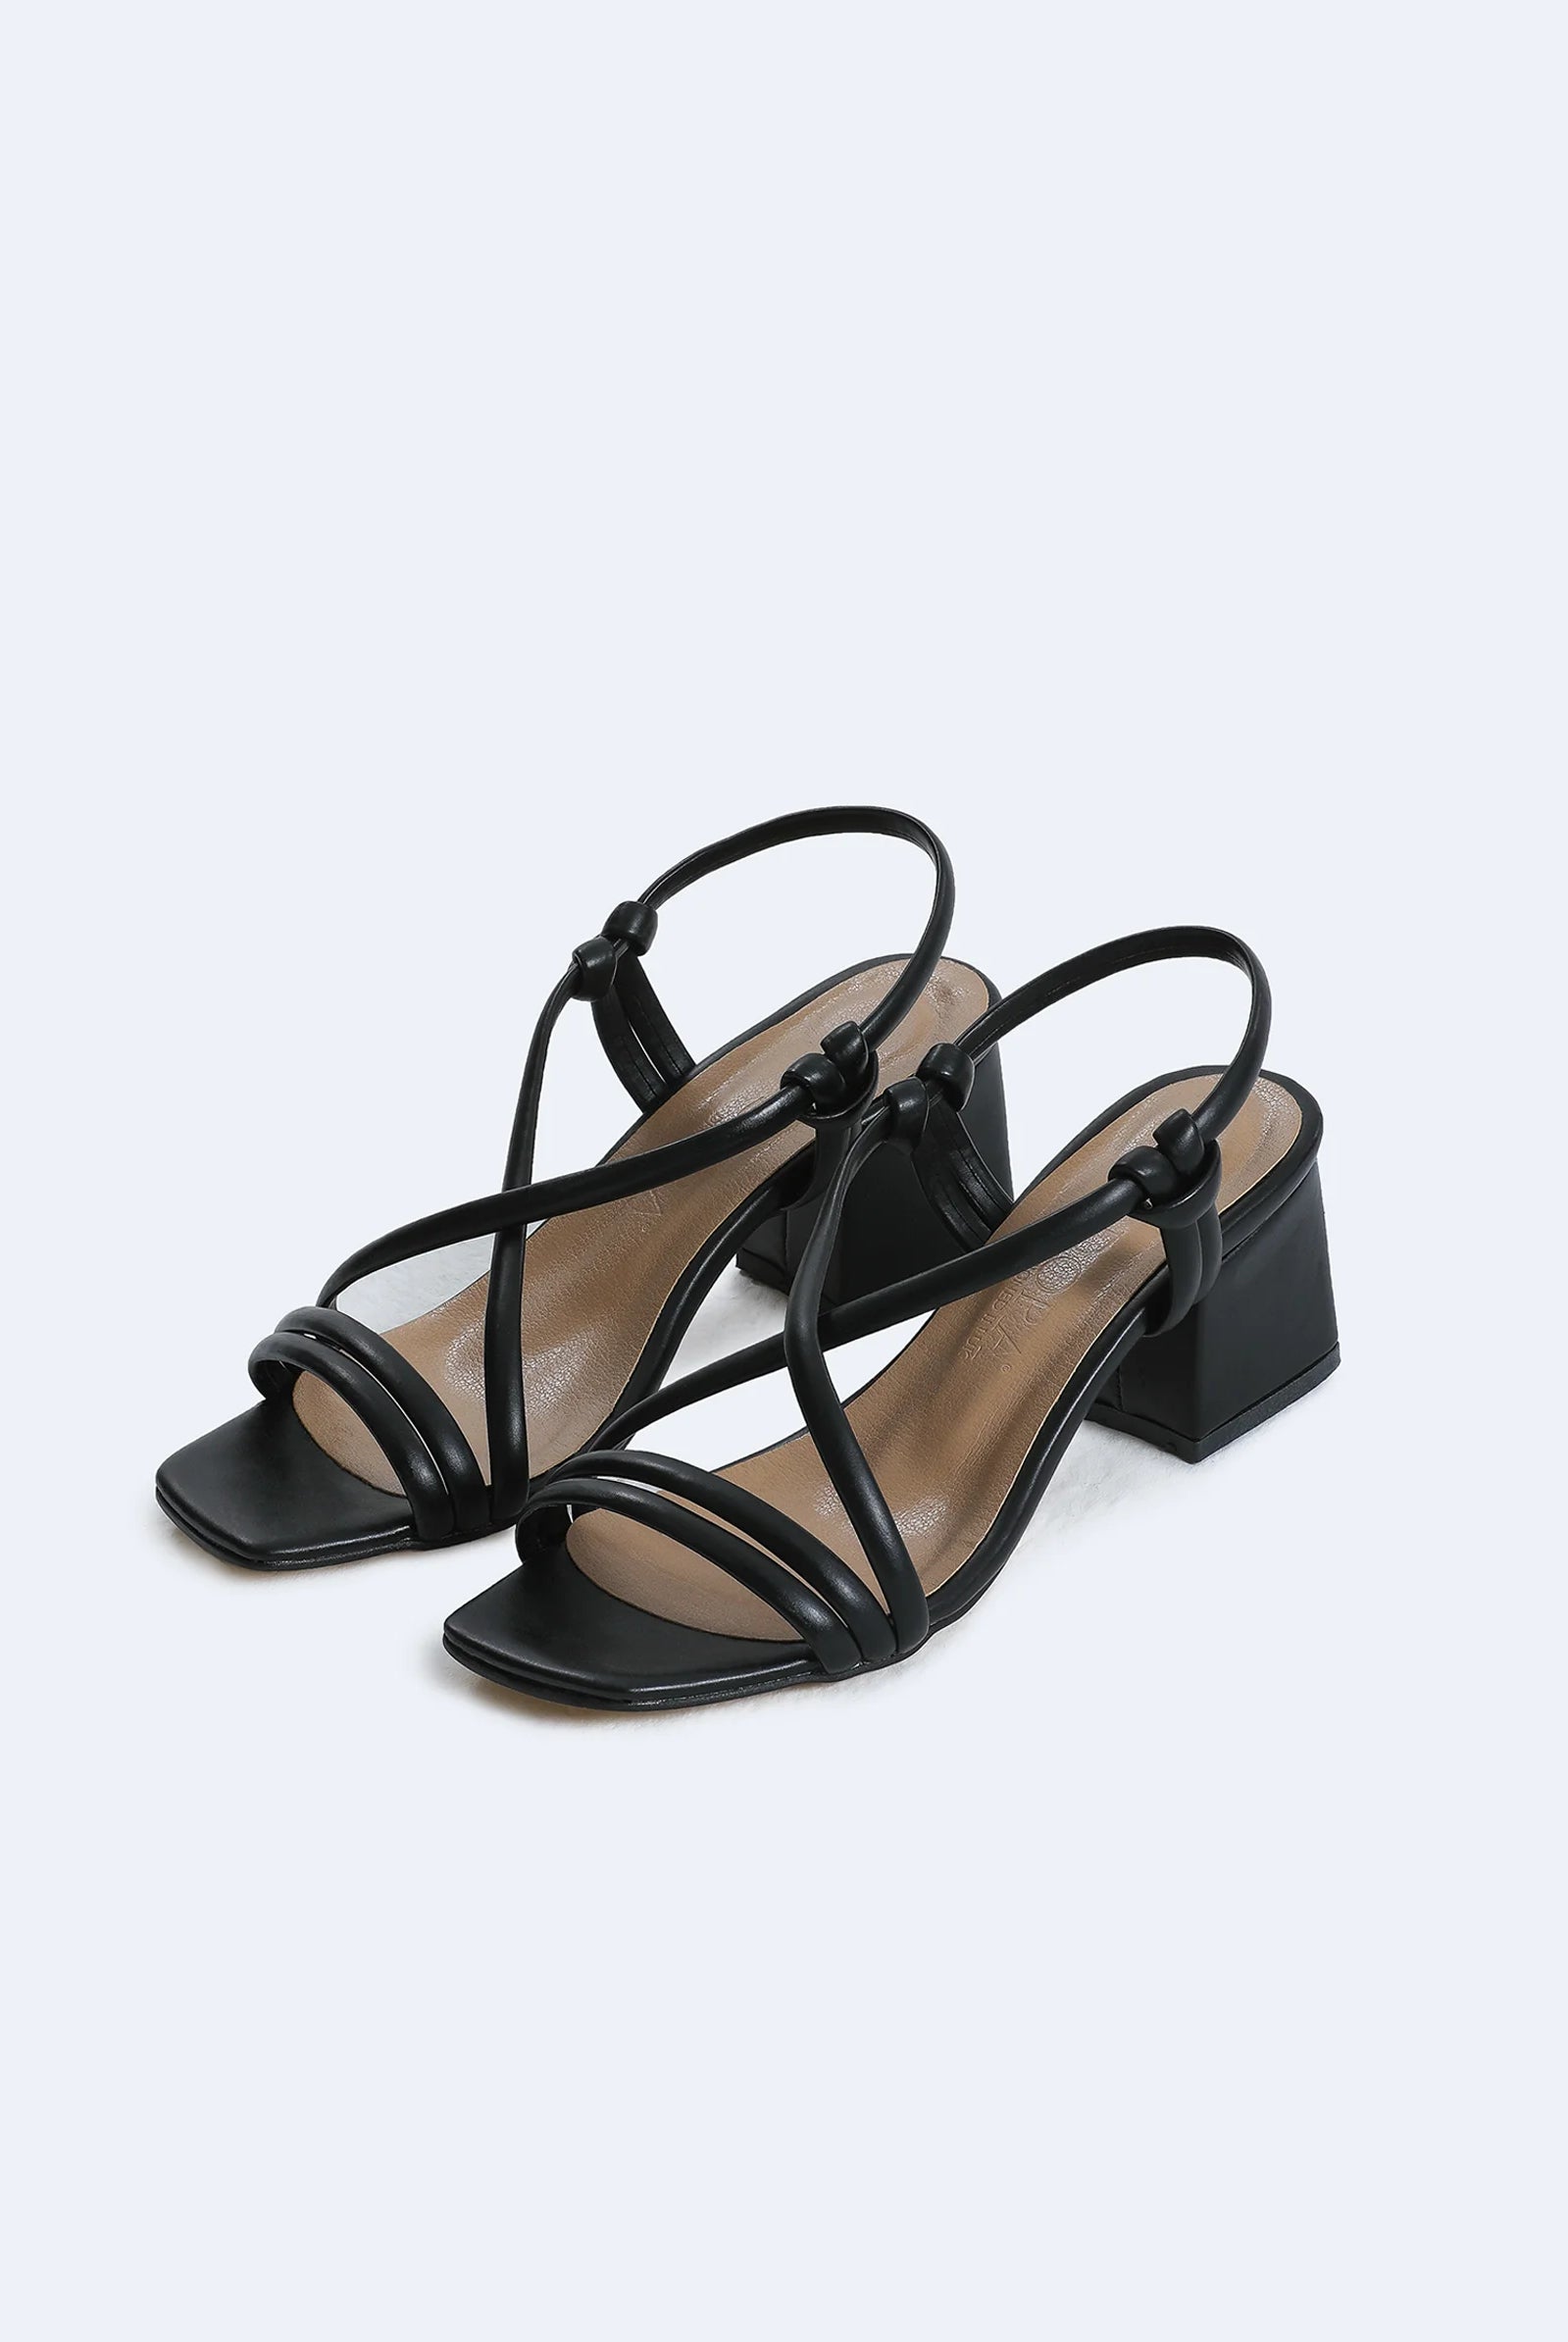 black block low heel sandals